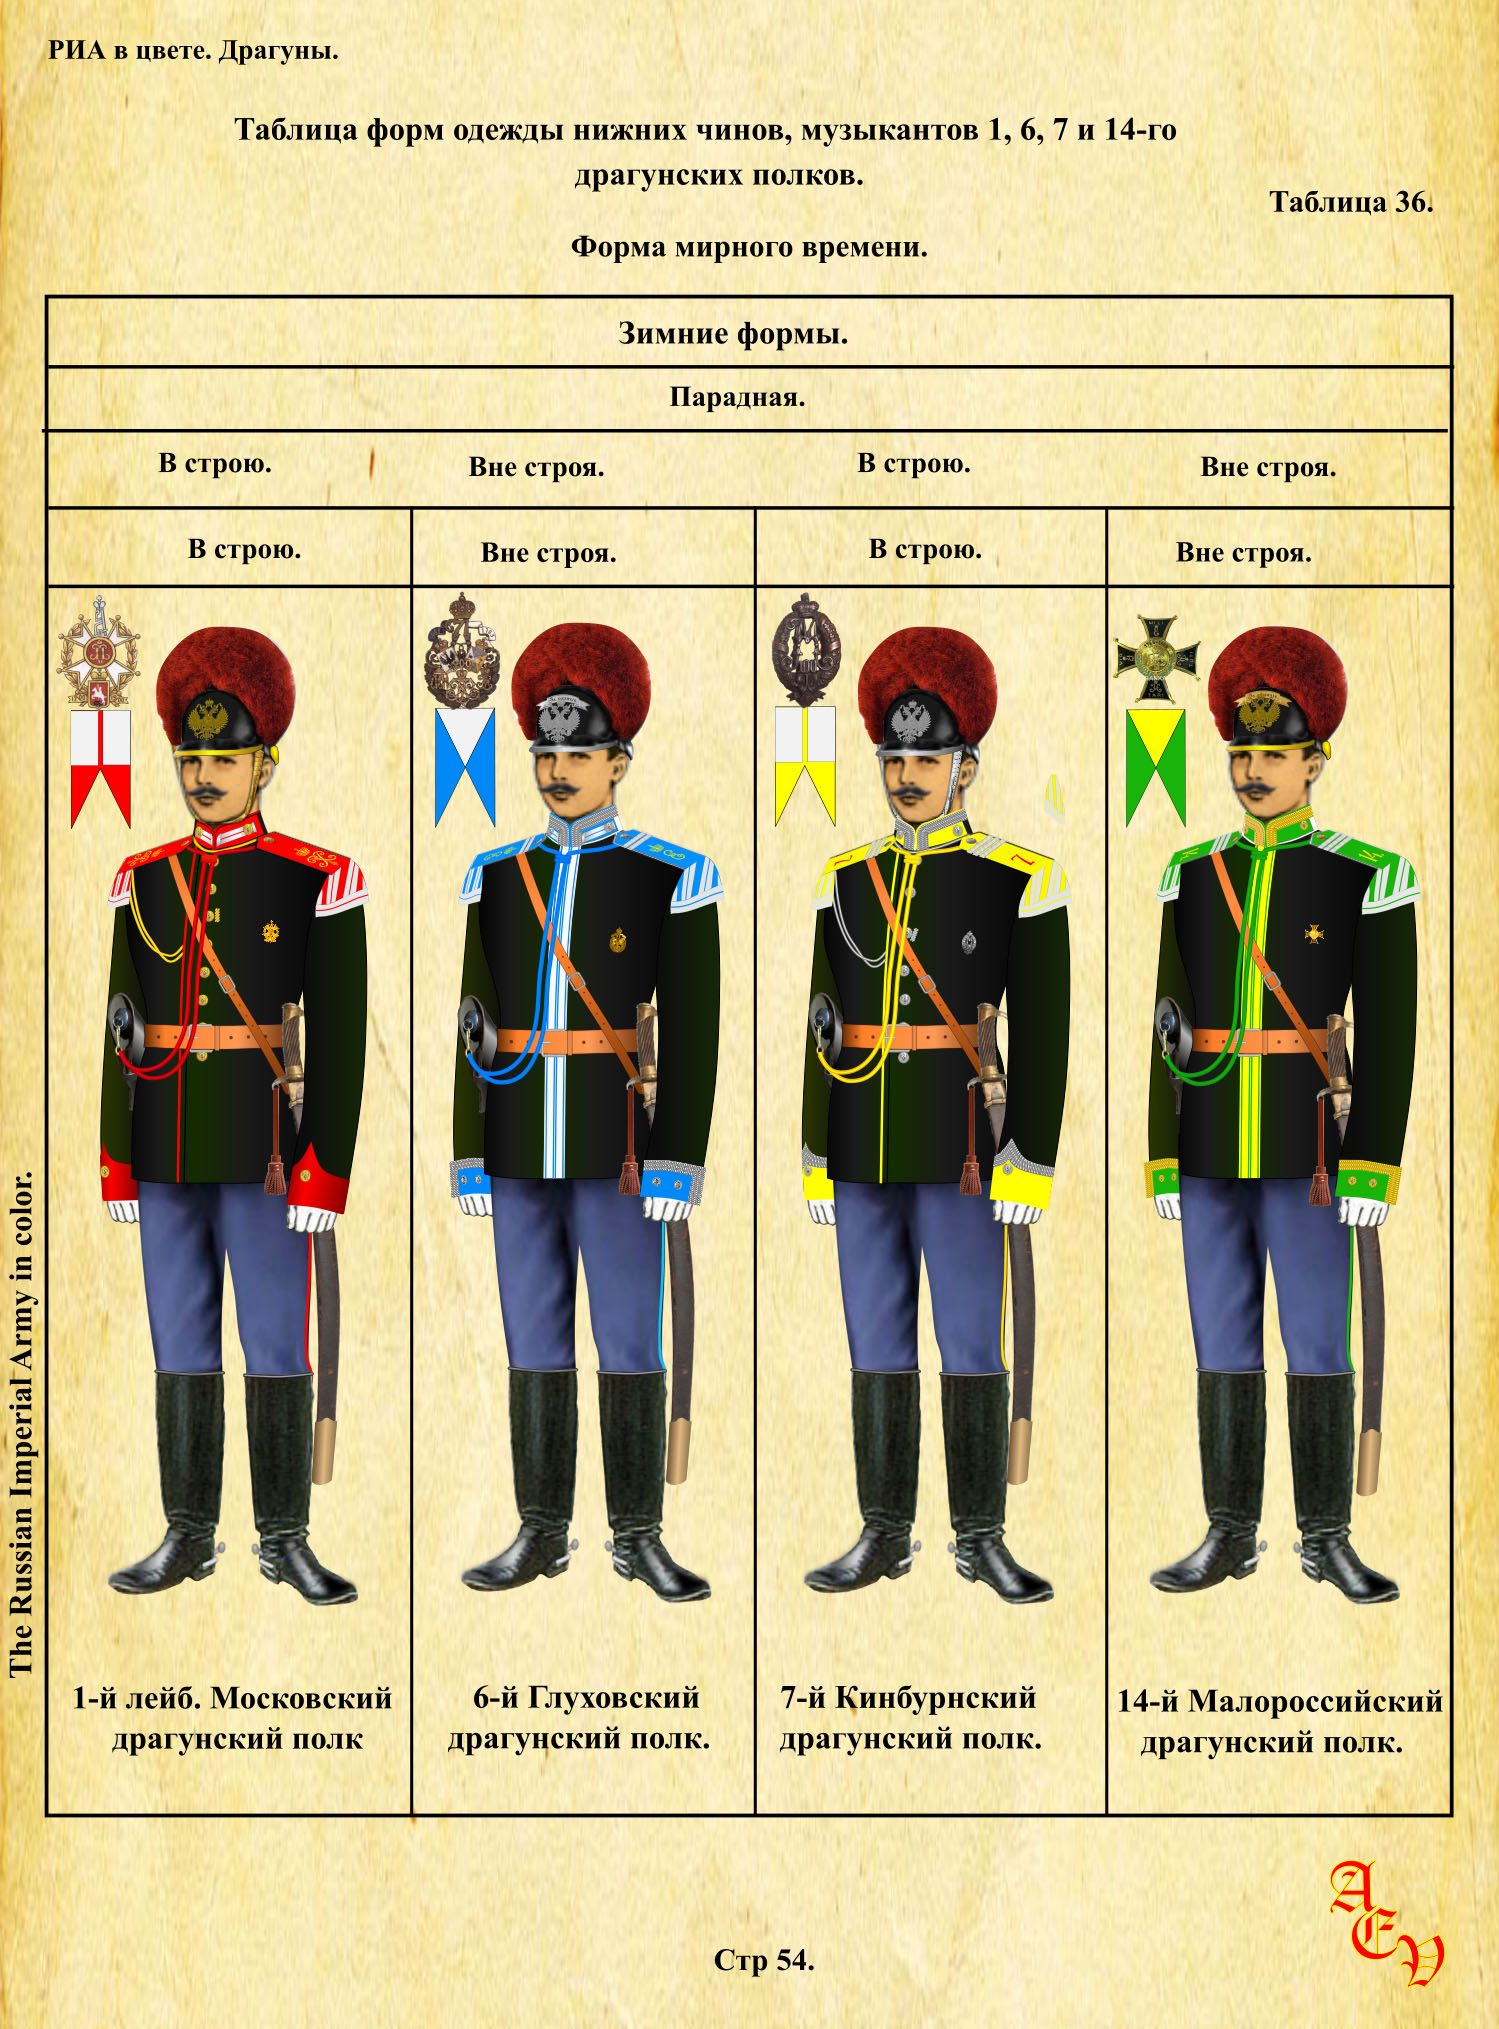 1 й московский драгунский полк